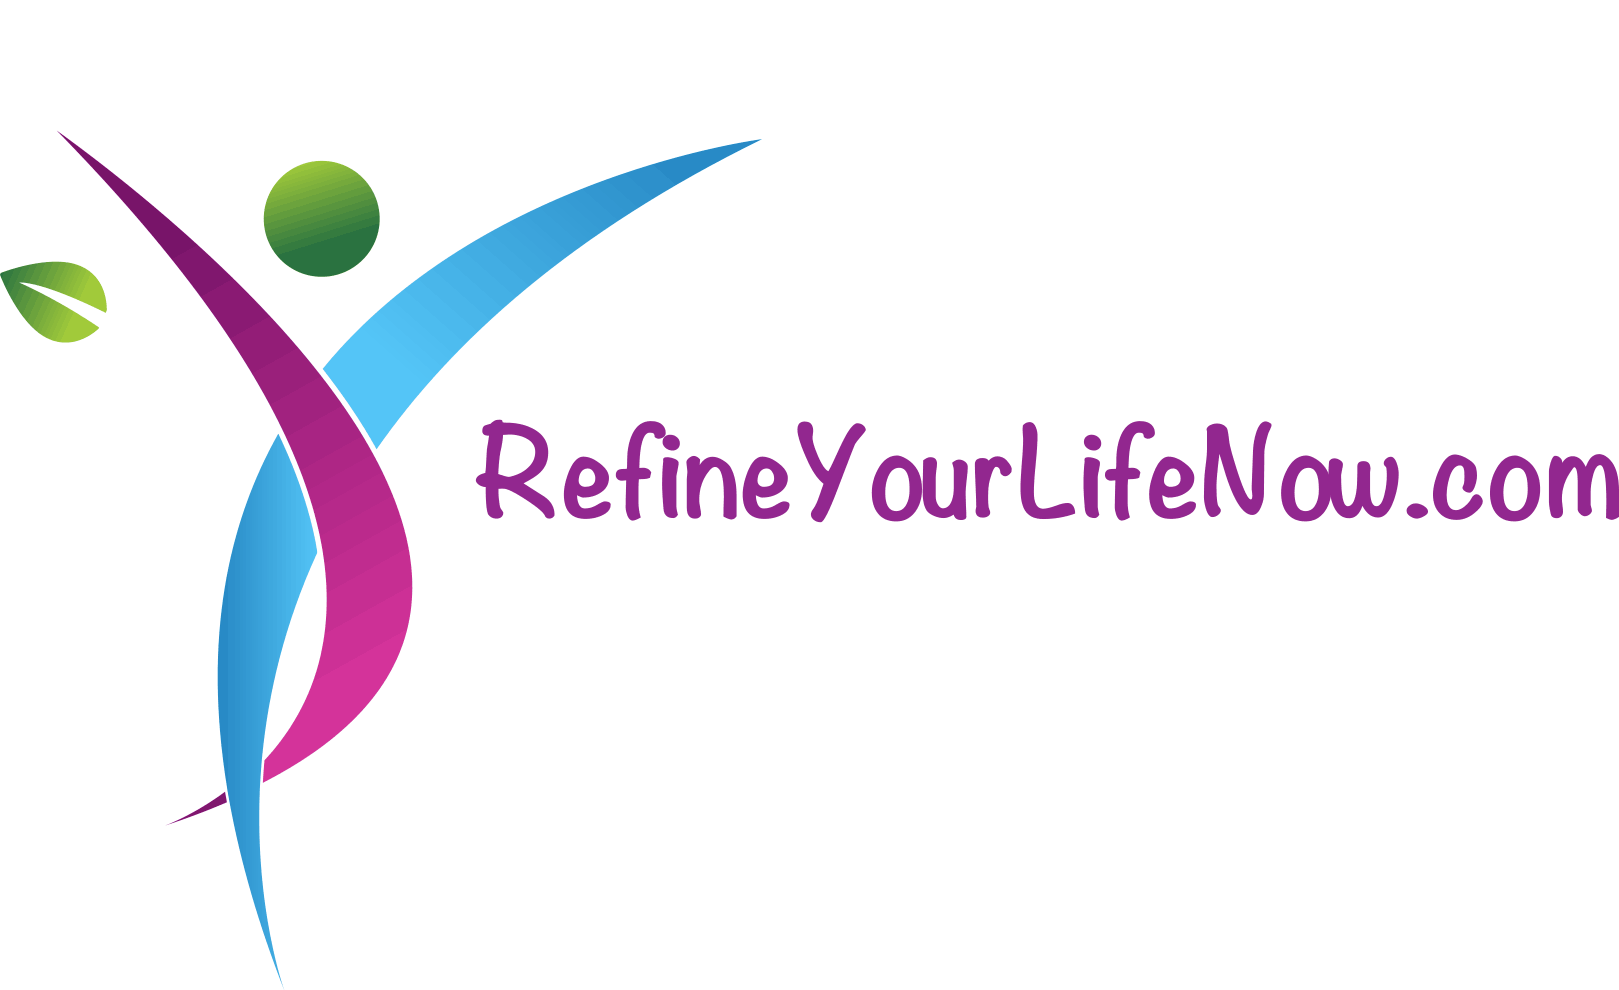 Refine Your Life Now